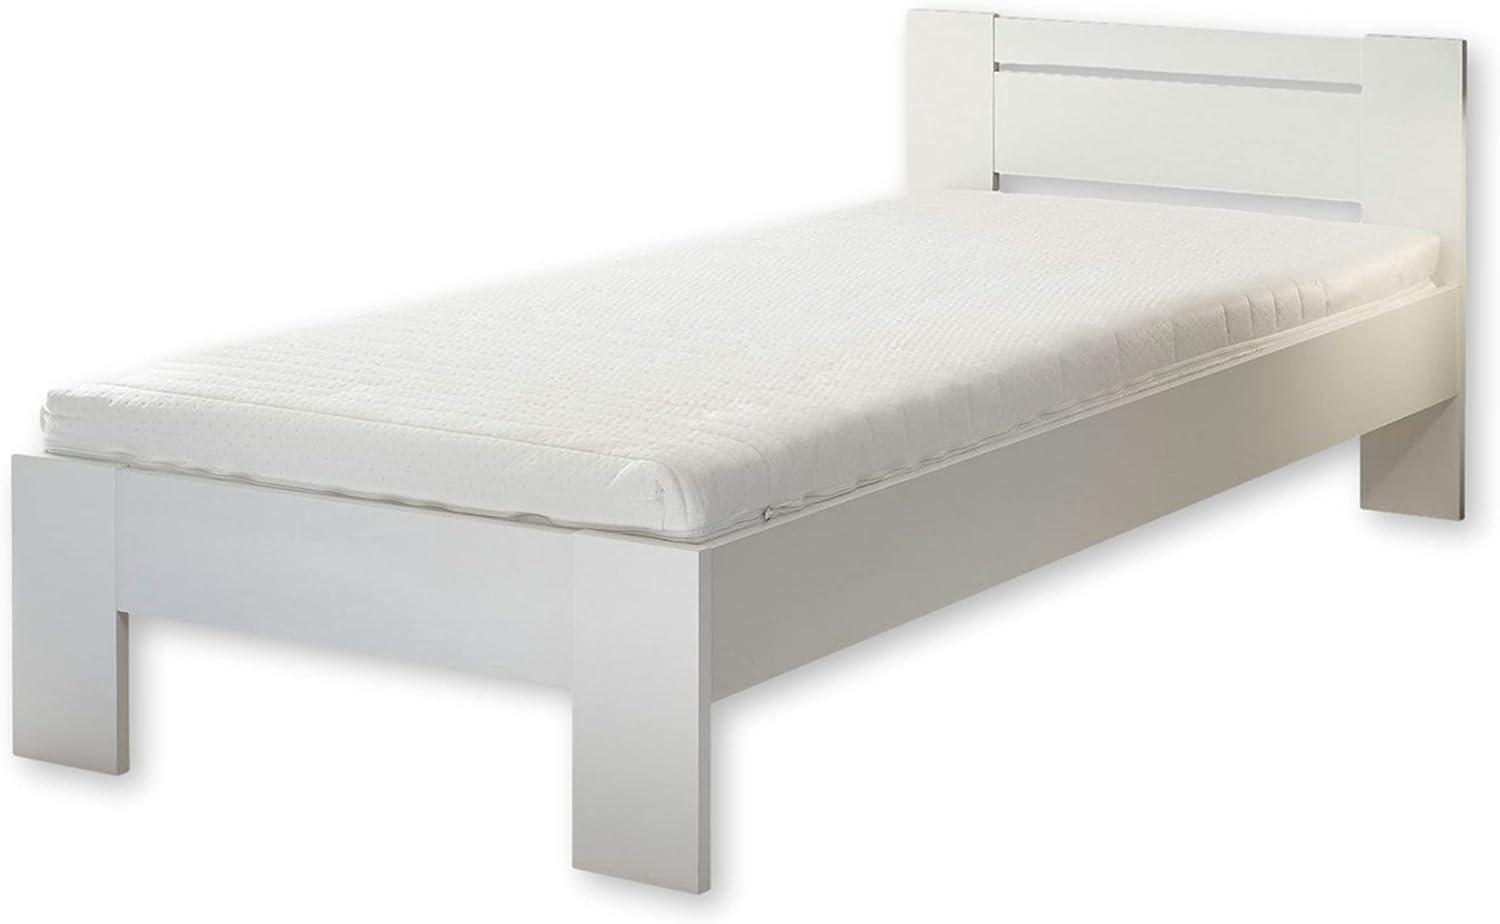 CANNES Futonbett 90 x 200 cm - Minimalistisches Jugendzimmer Bett in Weiß - 95 x 71 x 204 cm (B/H/T) Bild 1